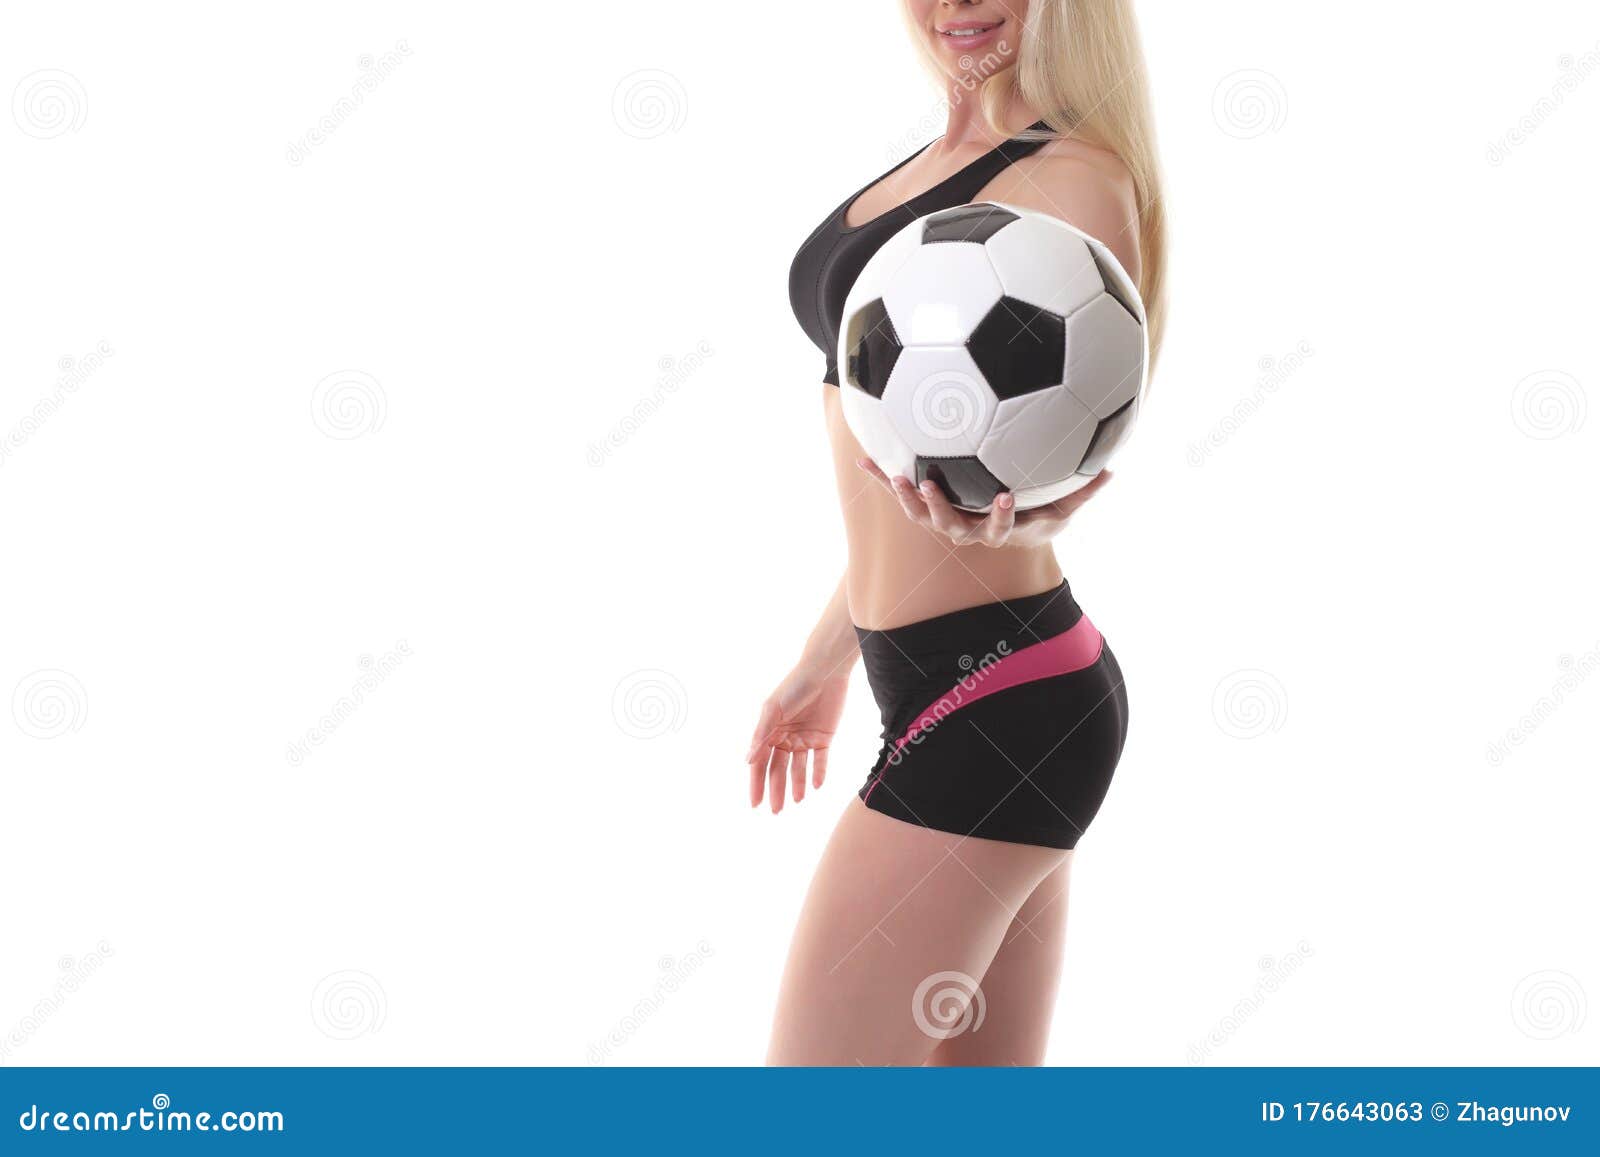 Sexy soccer girls